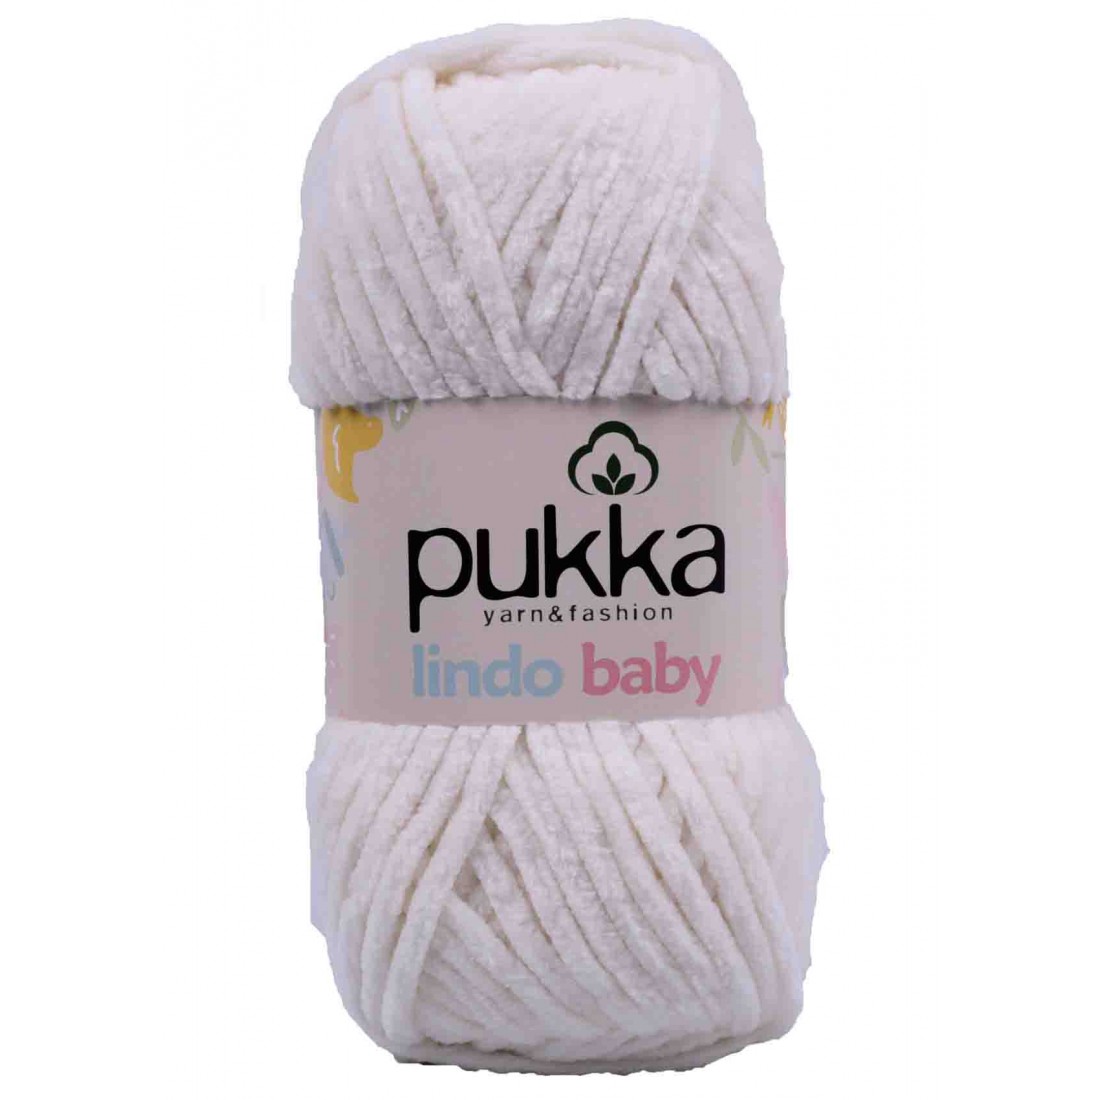 PUKKA Lindo Baby, 100g,70910